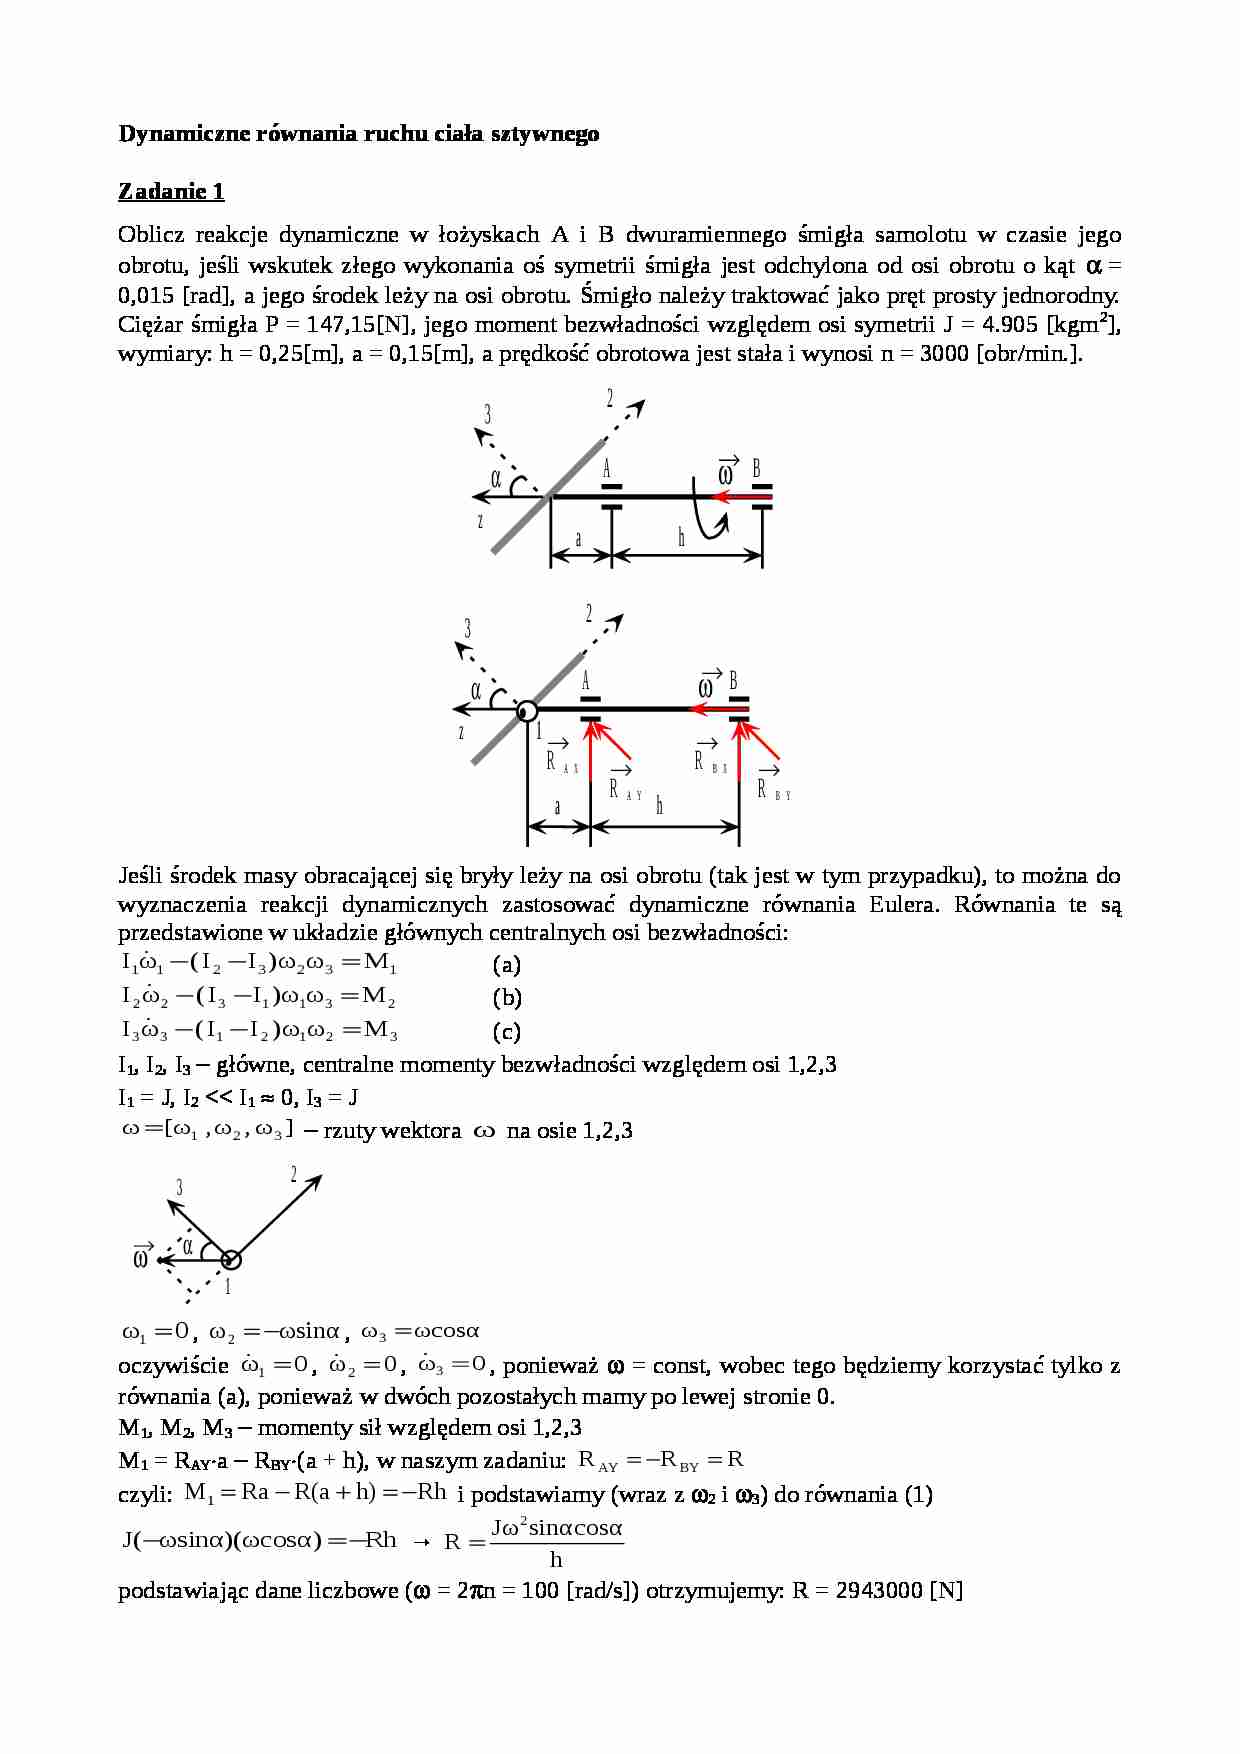 Dynamiczne równania ruchu ciała sztywnego - zadania - strona 1